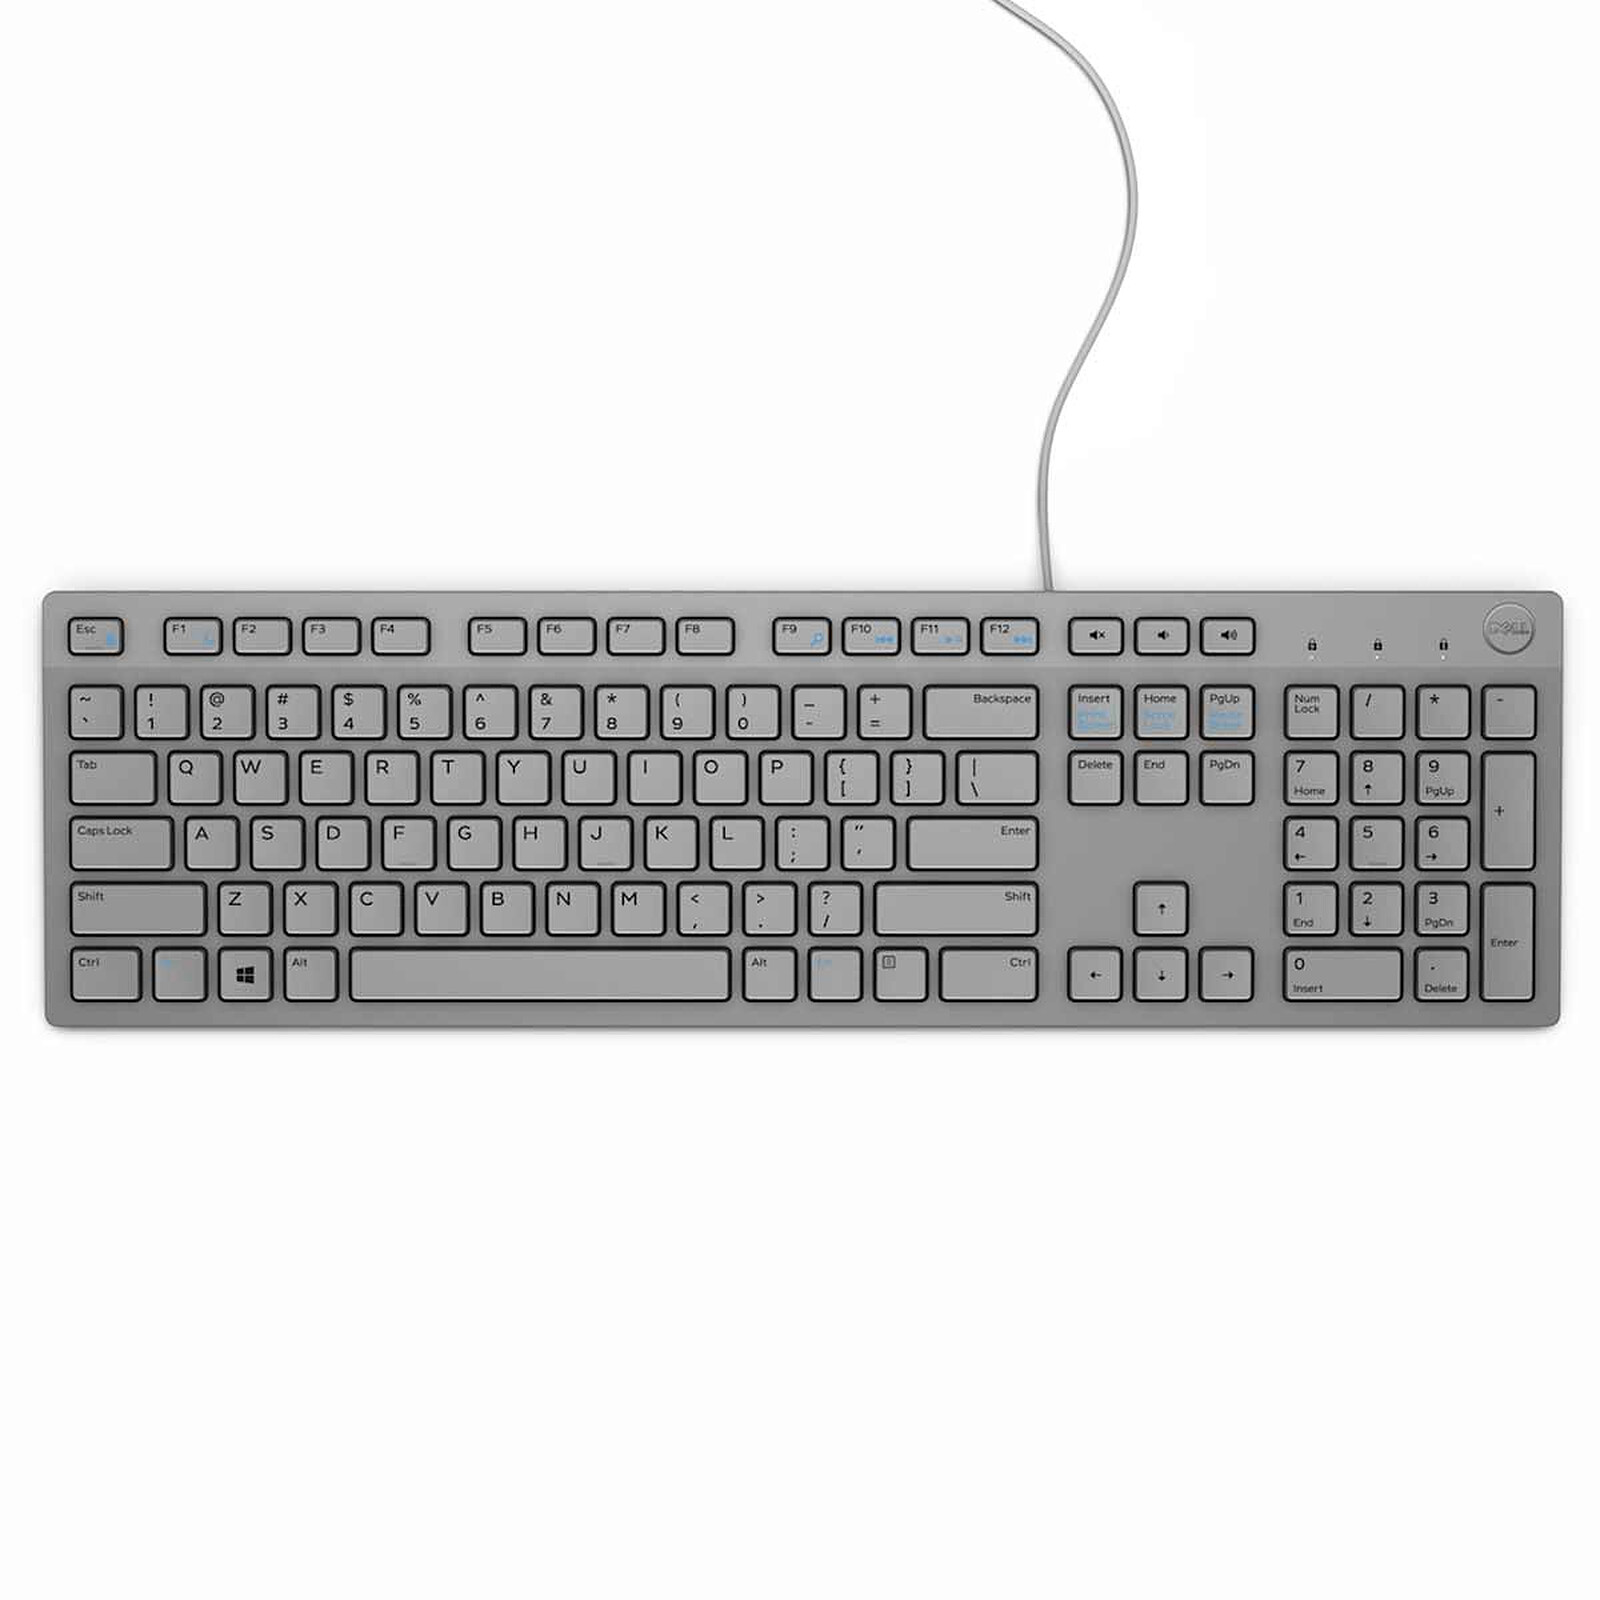 Dell KB216 - Grey - Keyboard - LDLC 3-year warranty | Holy Moley